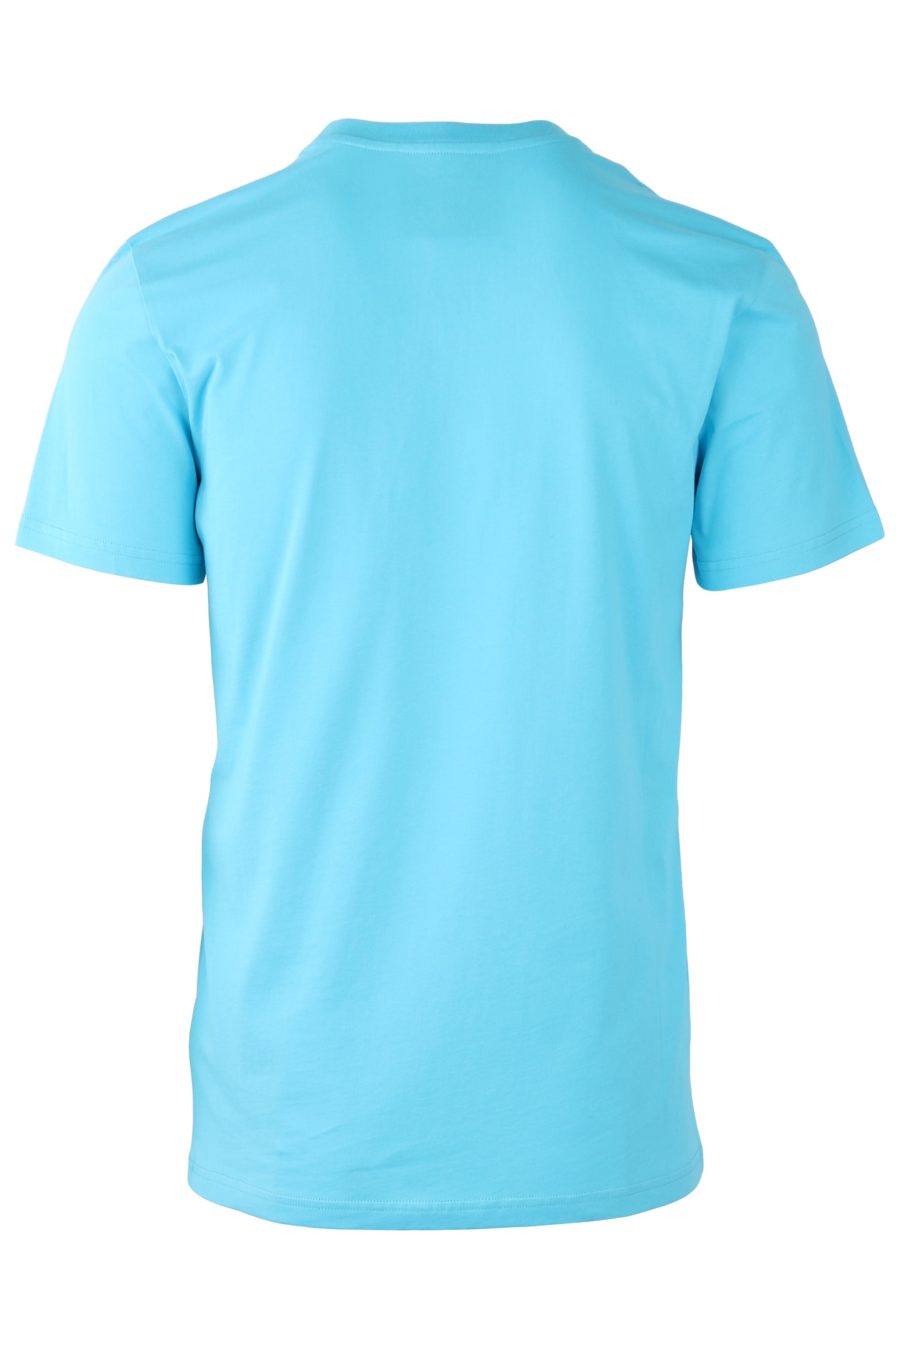 Camiseta Moschino Couture azul celeste con logo negro - 088ed055eb7322c9c4e86fd859f32b41f7f670f3